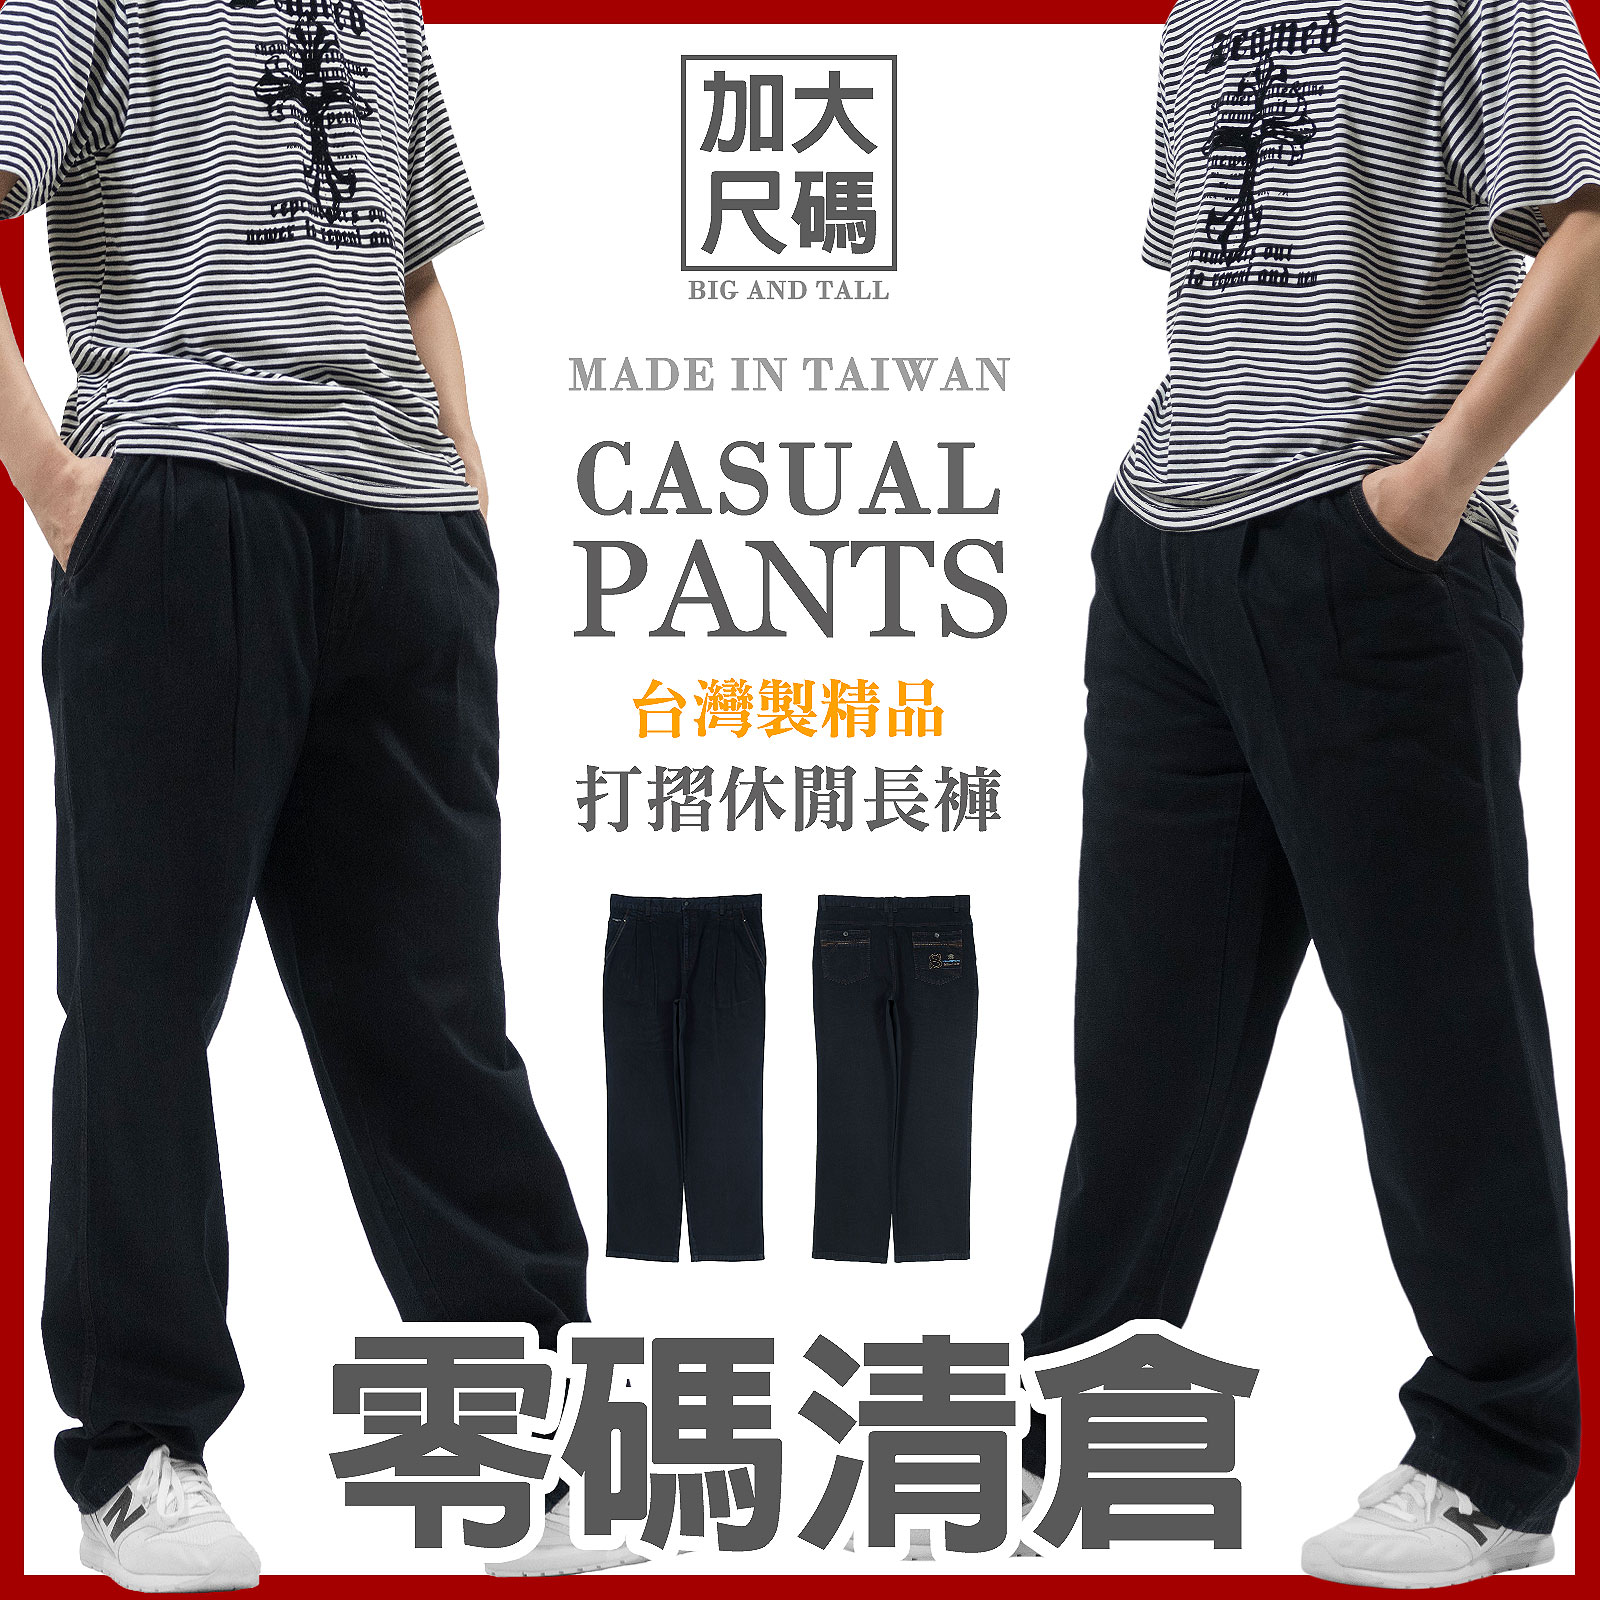 {零碼清倉}加大尺碼打摺長褲 台灣製精品牛仔休閒褲 丹寧長褲 打褶牛仔長褲 百貨公司等級休閒長褲 直筒褲 休閒牛仔褲 YKK拉鍊 車繡後口袋 Big And Tall Made In Taiwan Pleated Front Pants Denim Casual Pants Regular Fit PantsEmbroidered Pockets (384-6713-21)深藍色 腰圍:38~42英吋 (97~107公分) 男 [實體店面保障]sun-e